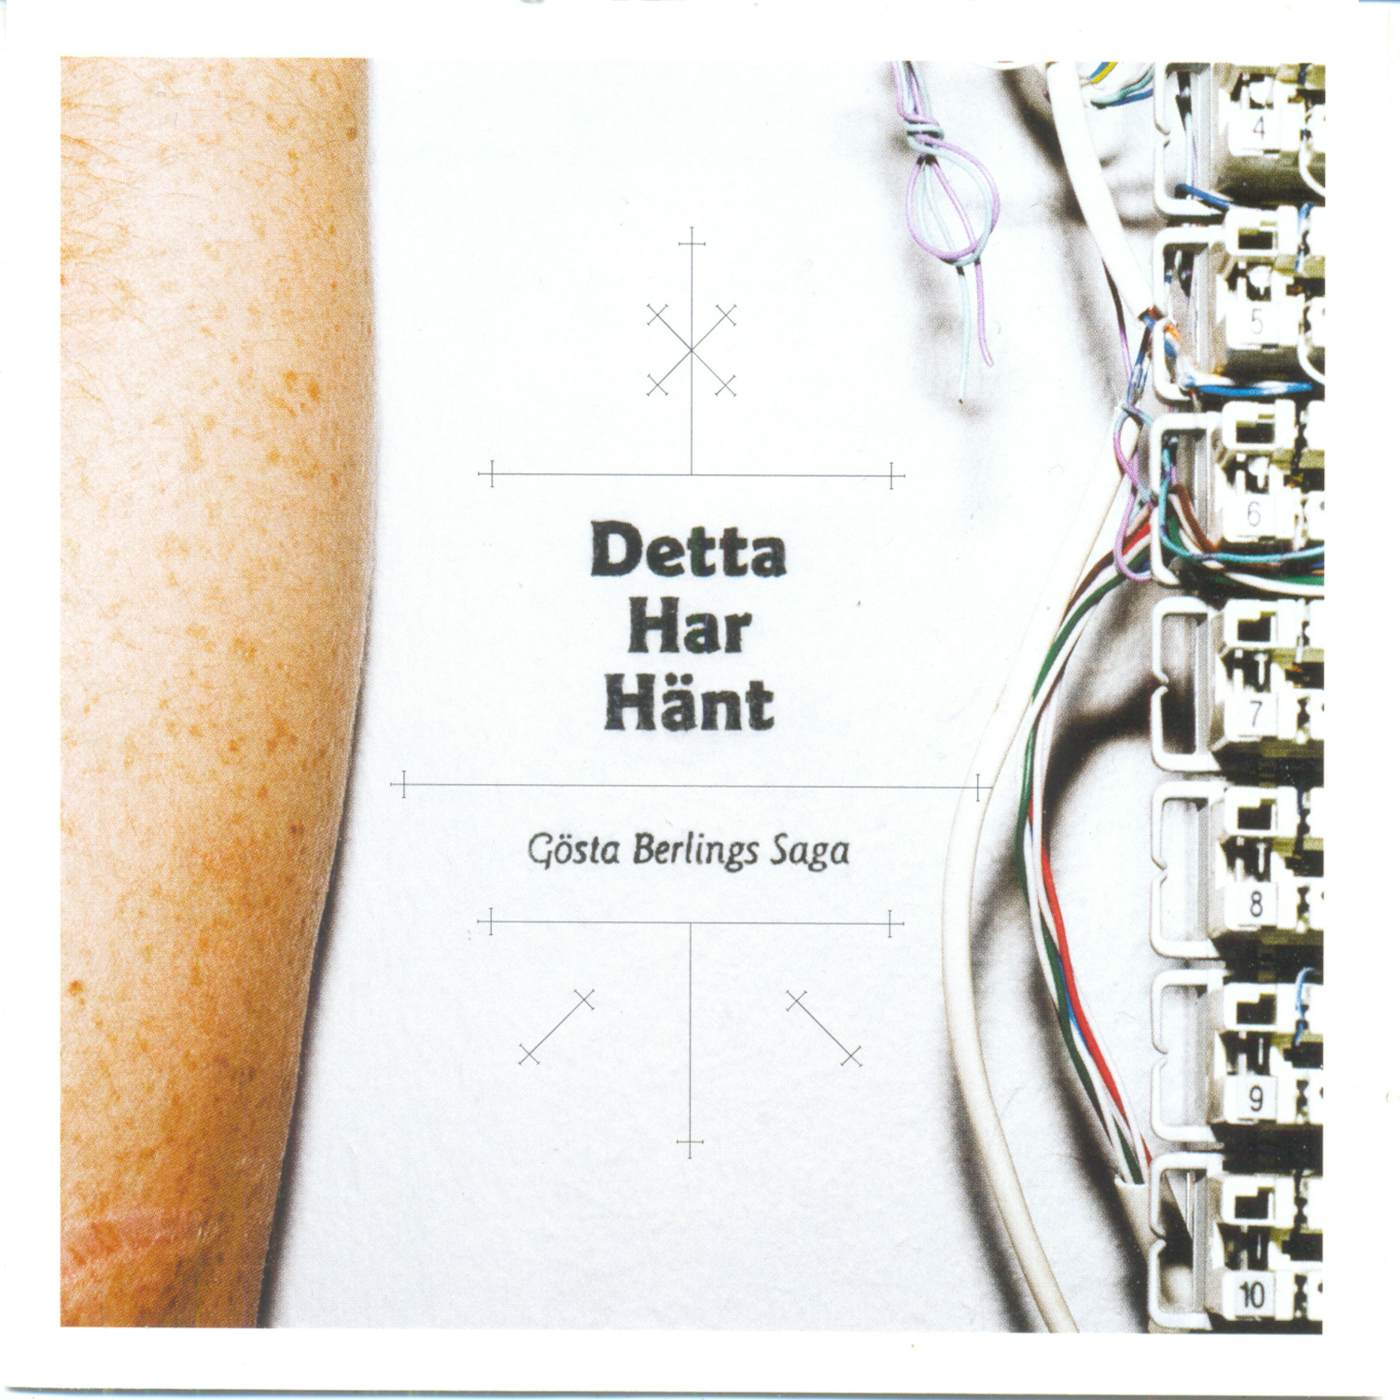 Gösta Berlings Saga DETTA HAR HANT CD